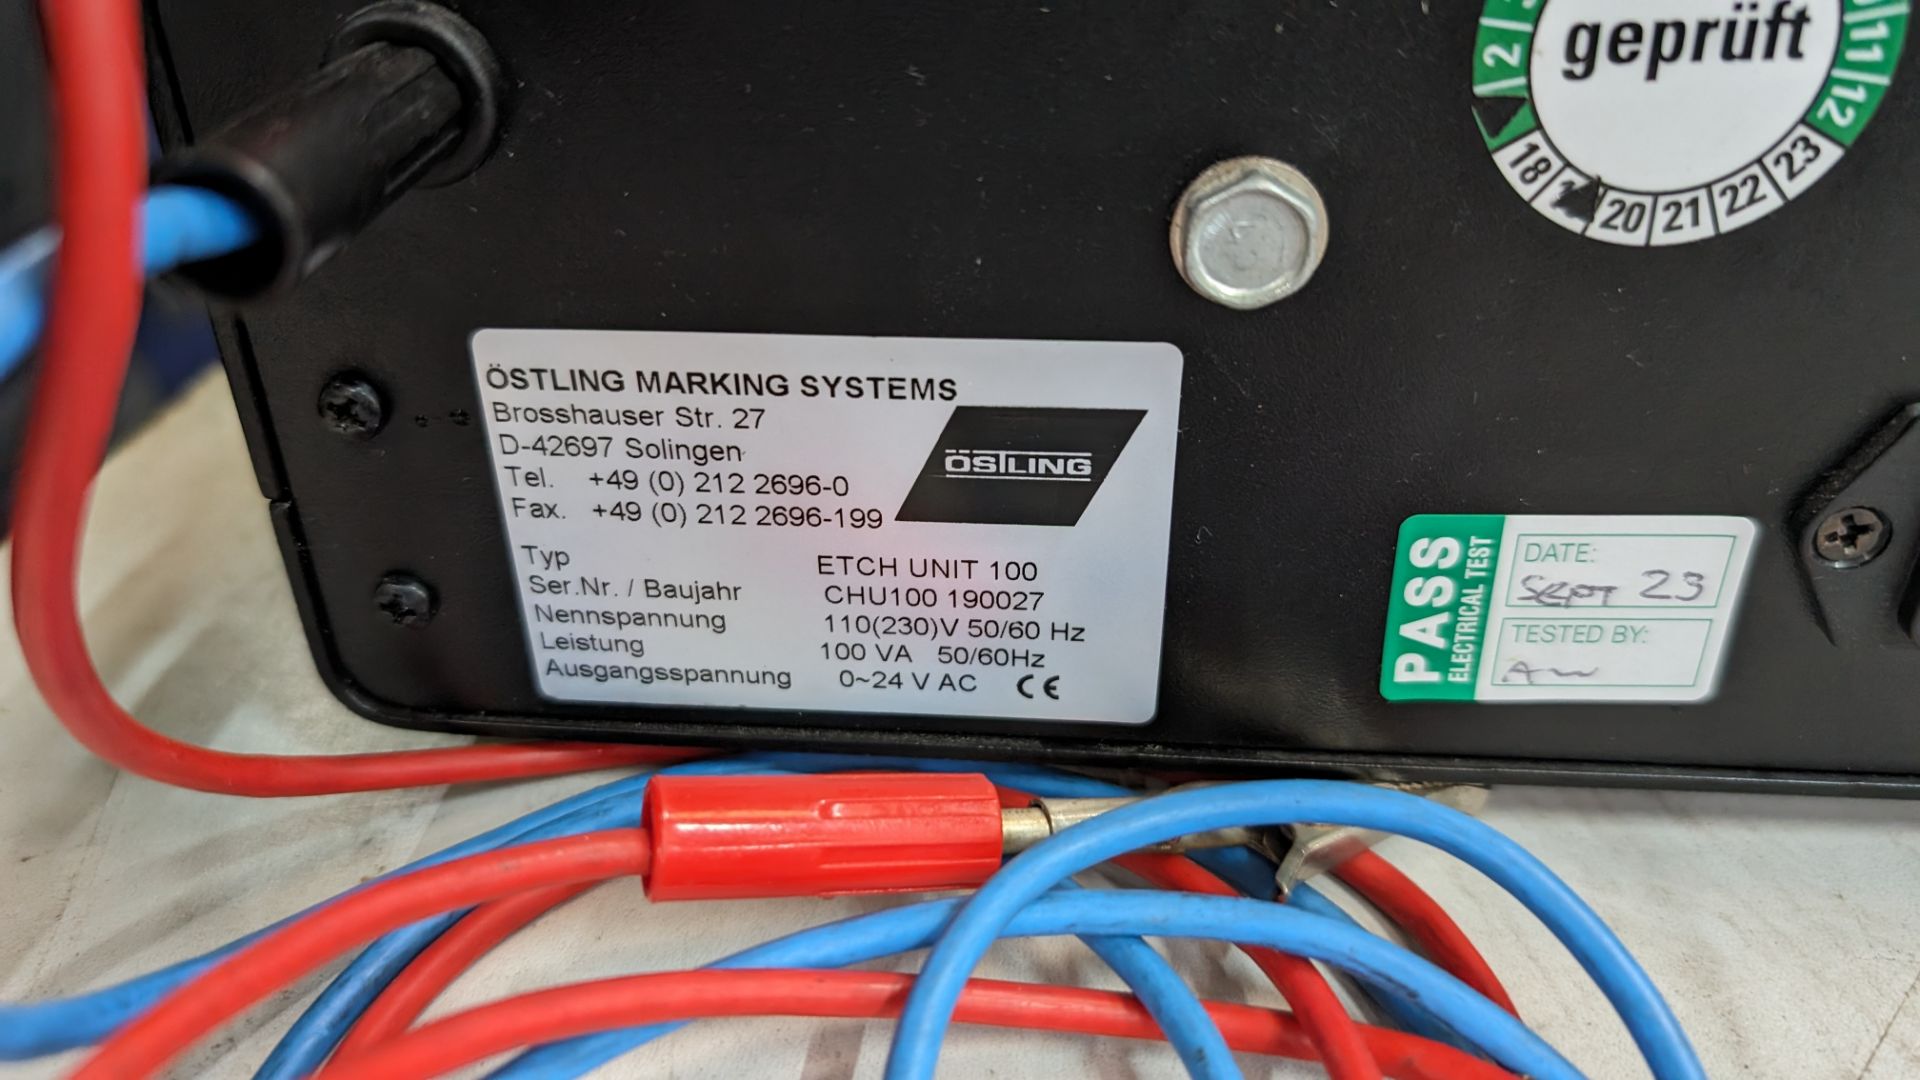 Ostling electrolytic marking system model EU100 - Image 6 of 6